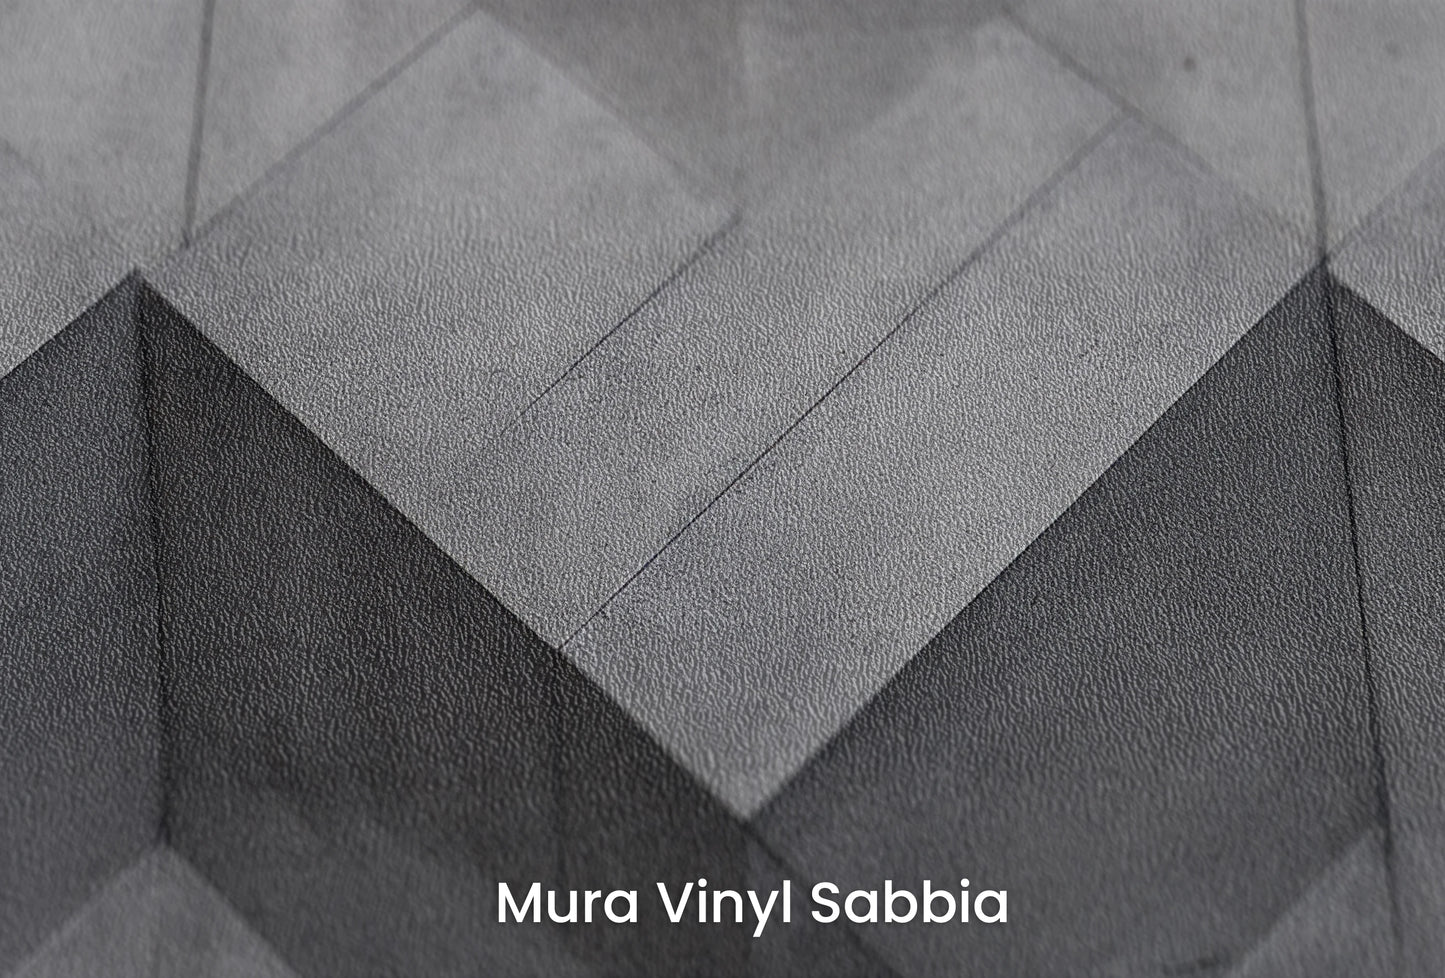 Zbliżenie na artystyczną fototapetę o nazwie Zigzag Concrete na podłożu Mura Vinyl Sabbia struktura grubego ziarna piasku.